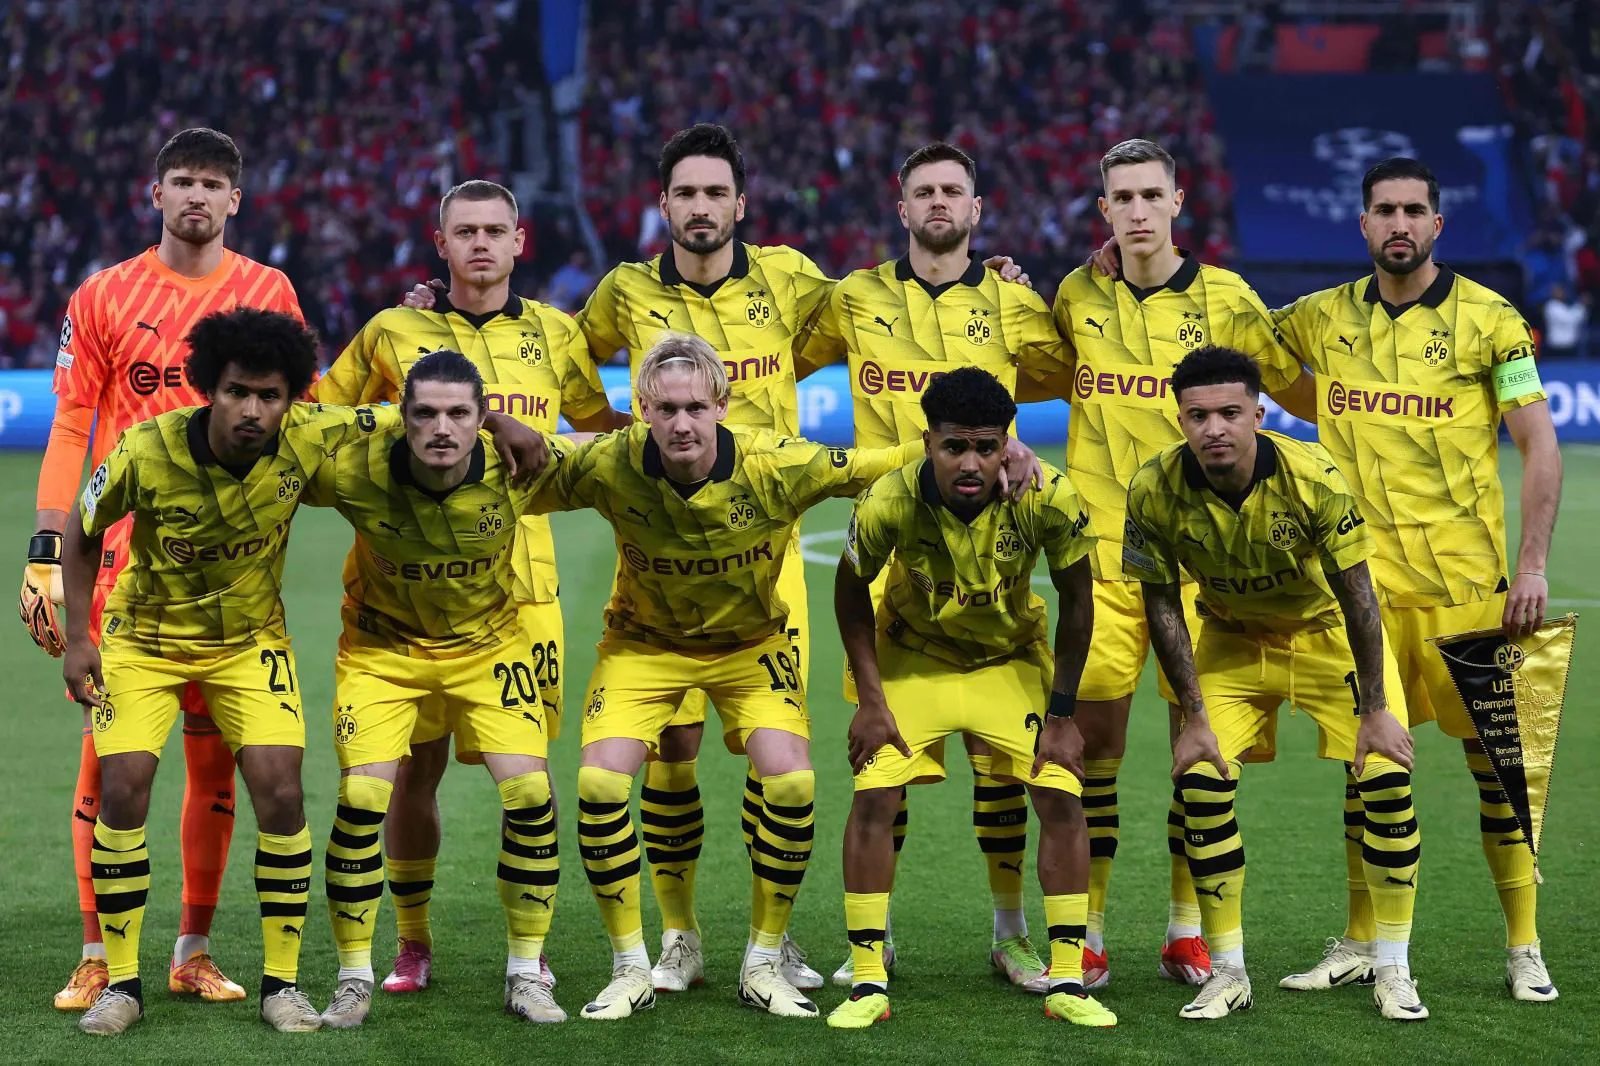 Chung kết vô địch | Còn có Borussia Dortmund, đối thủ chúng ta dự đoán sẽ gặp Real Madrid ở chung kết Champions League Cac tỉnh